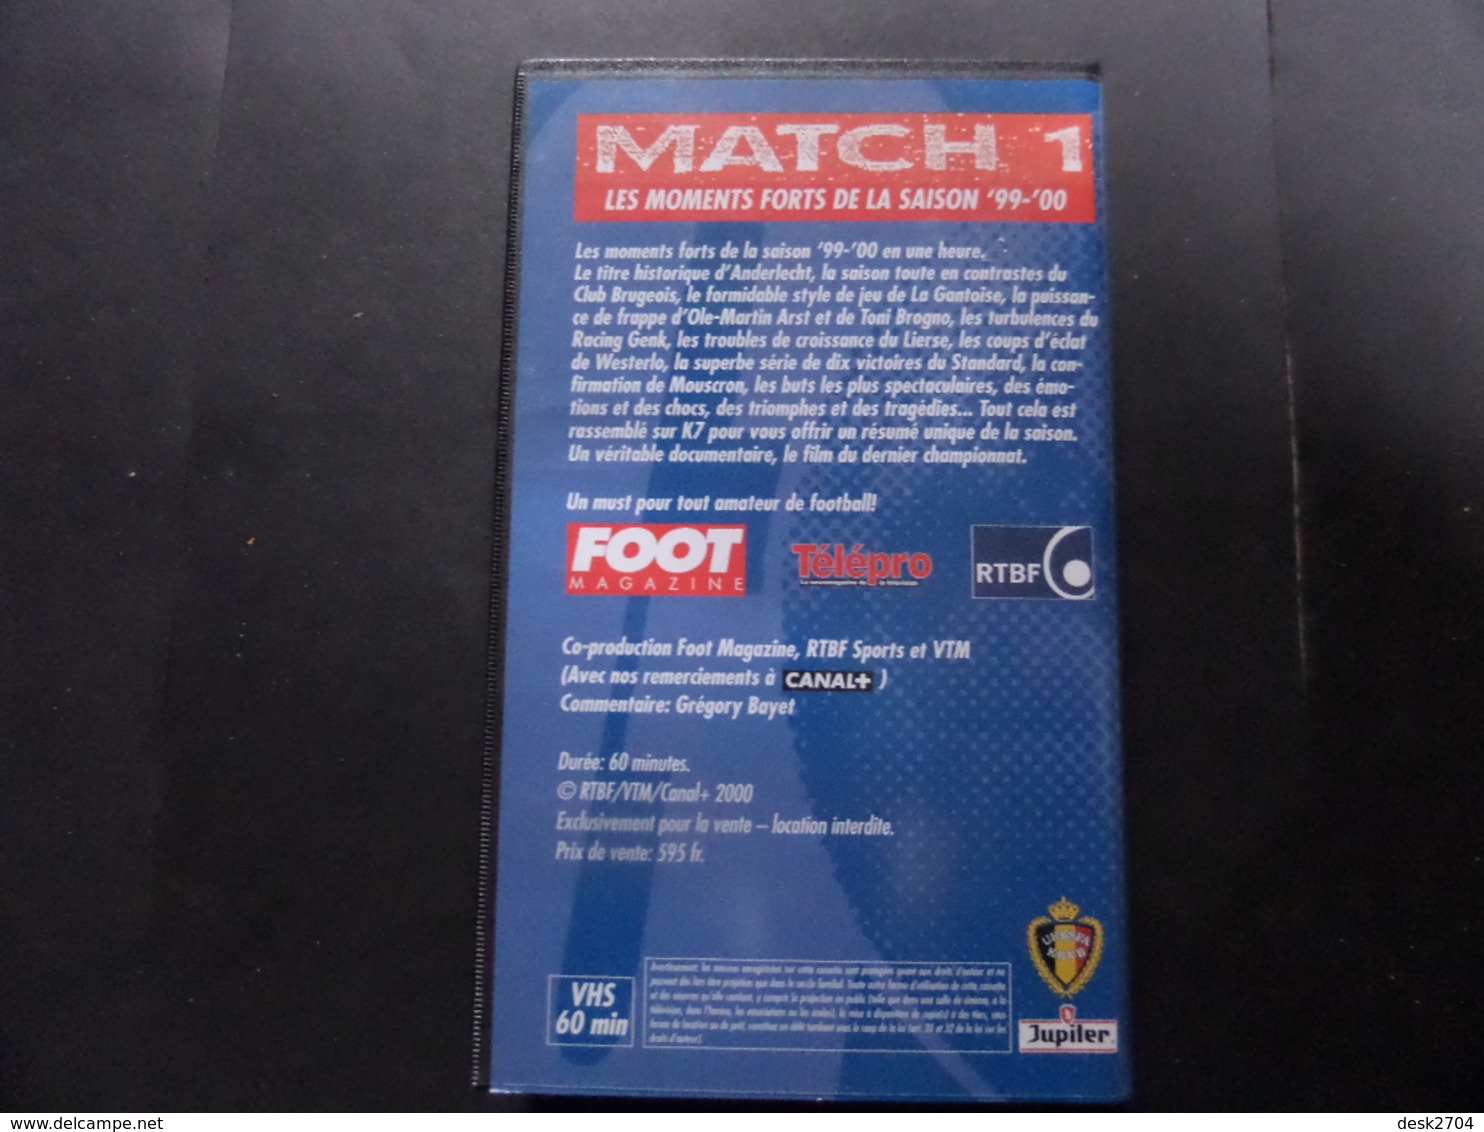 VHS Football Belgique 99/00 - Deporte